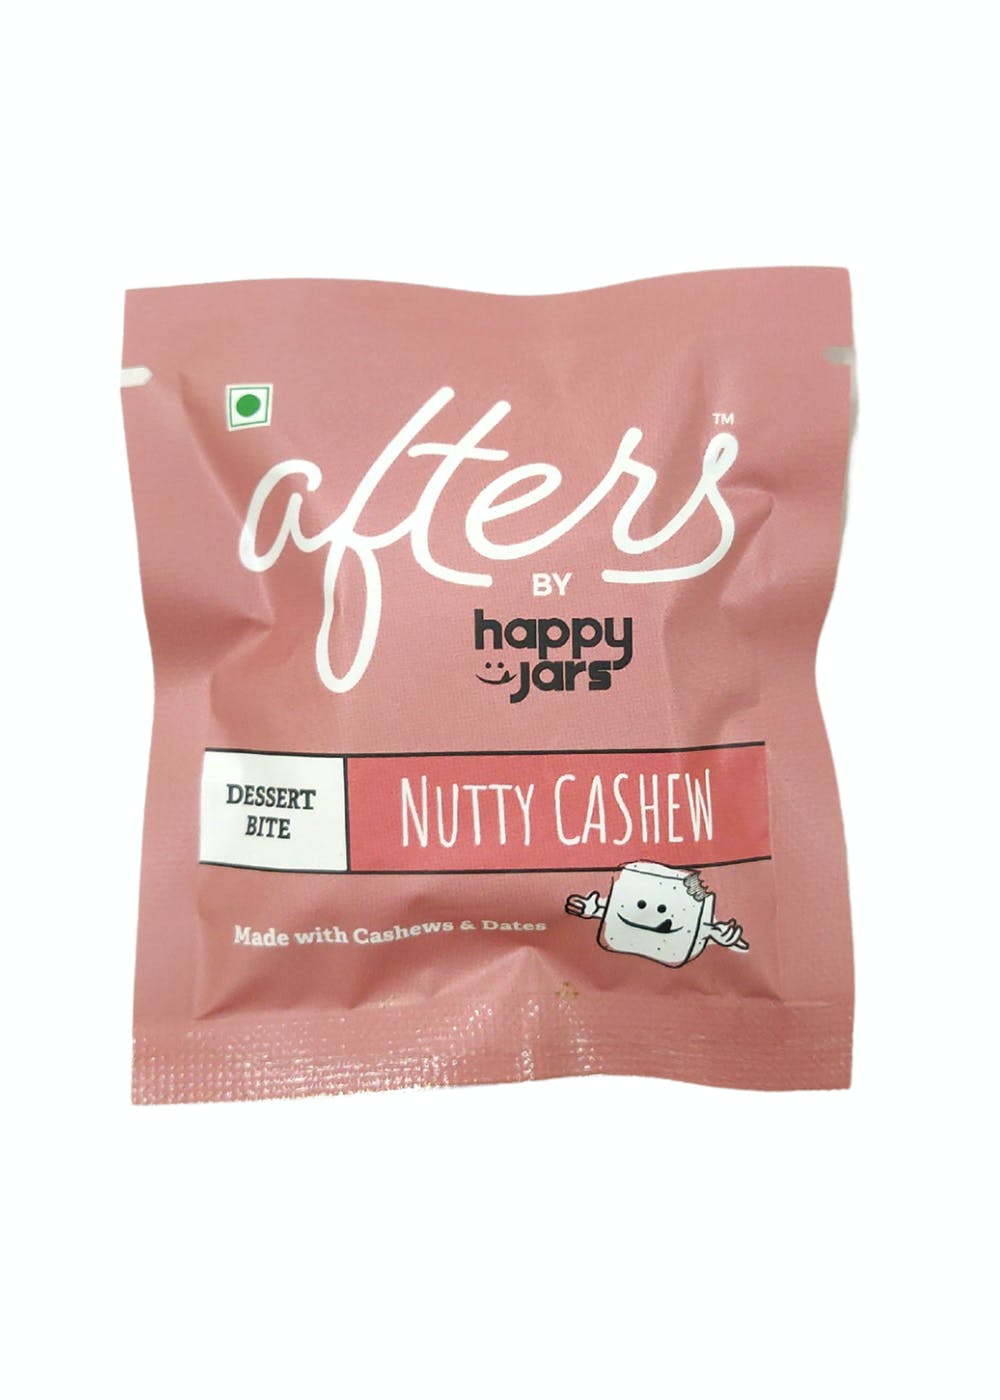 Healthy Dessert Bite - Nutty Cashew Value Pack